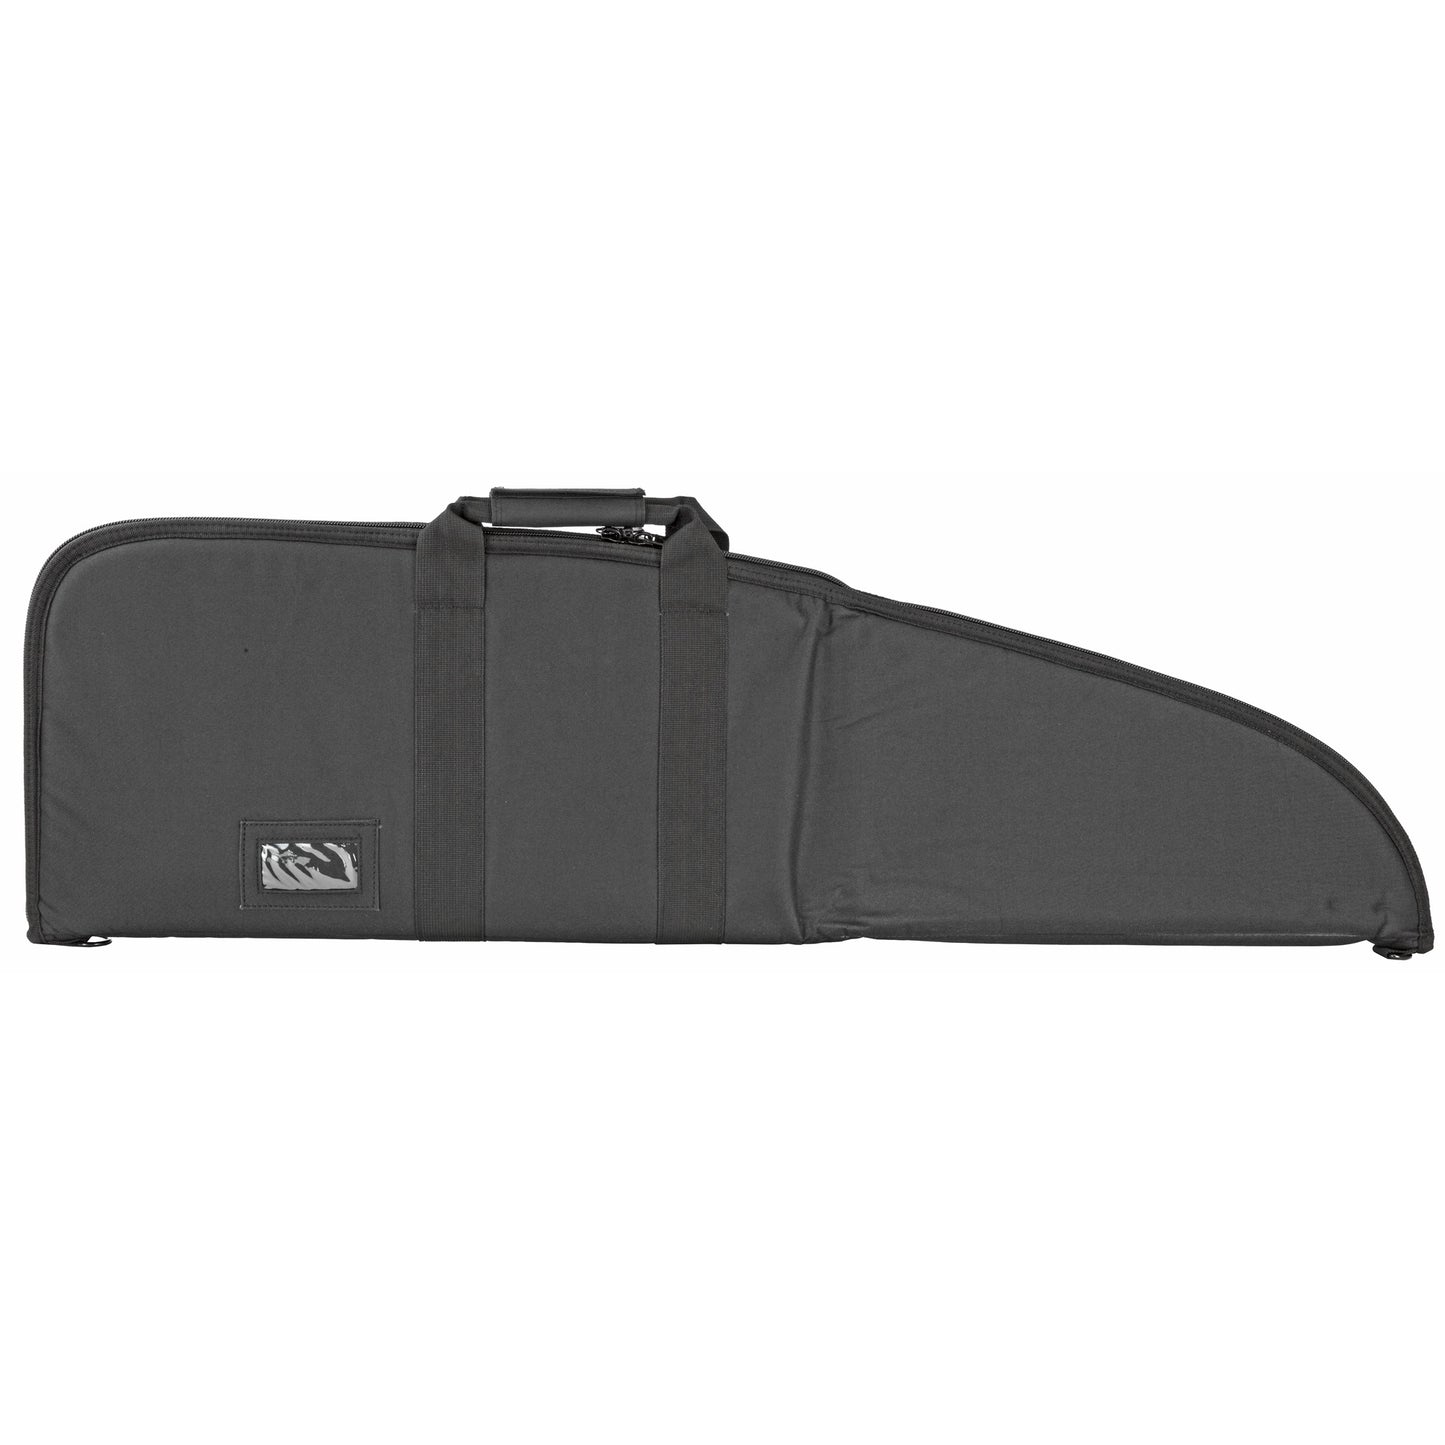 NCSTAR Rifle Case Black Nylon 42" Carry Handle Shoulder Strap CV2907-42 - California Shooting Supplies